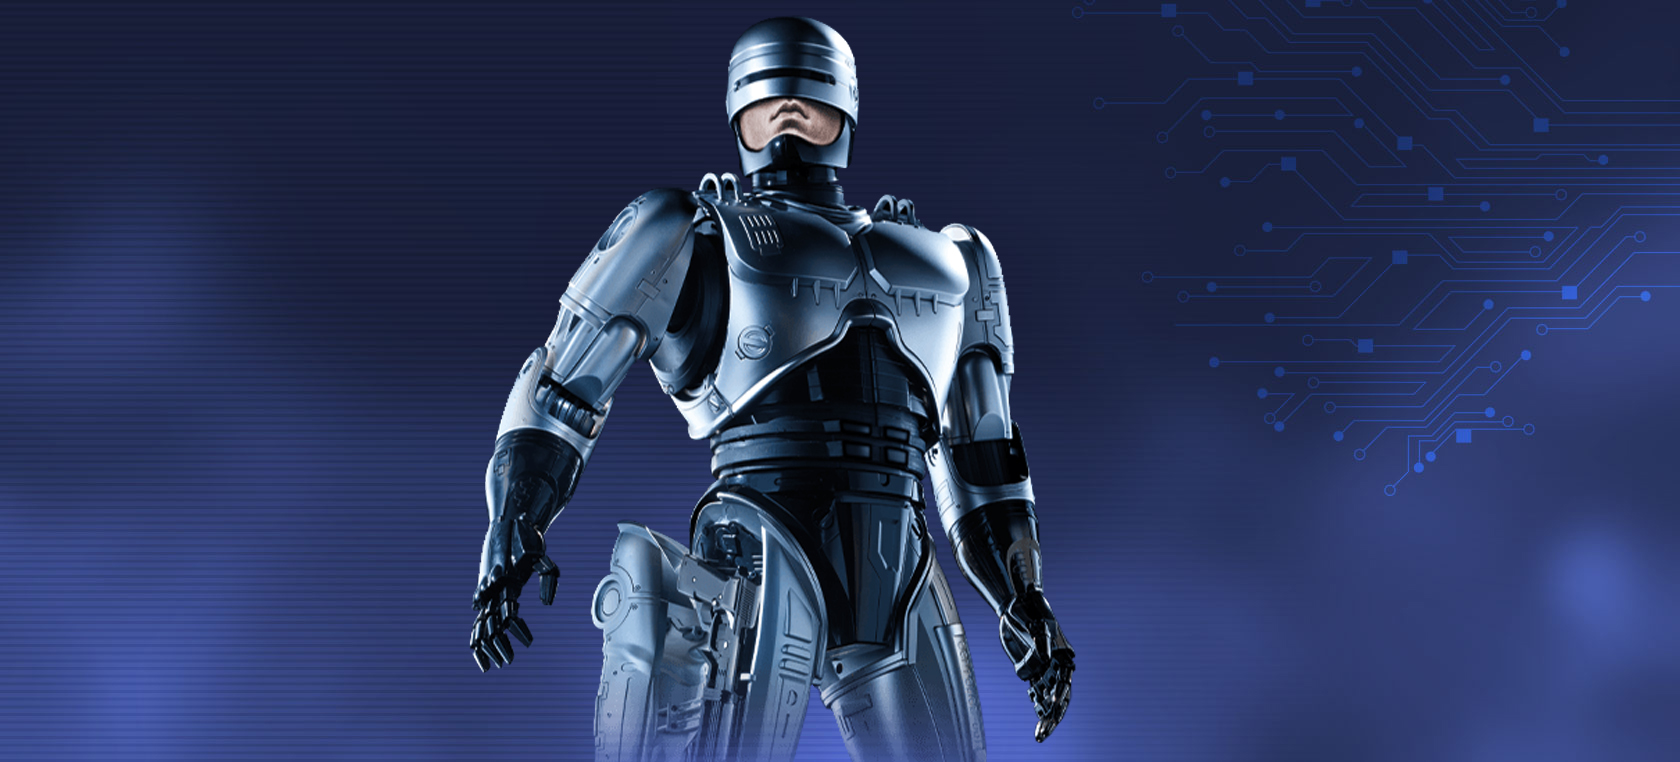 Altaya Contruisez le légendaire cyborg Robocop